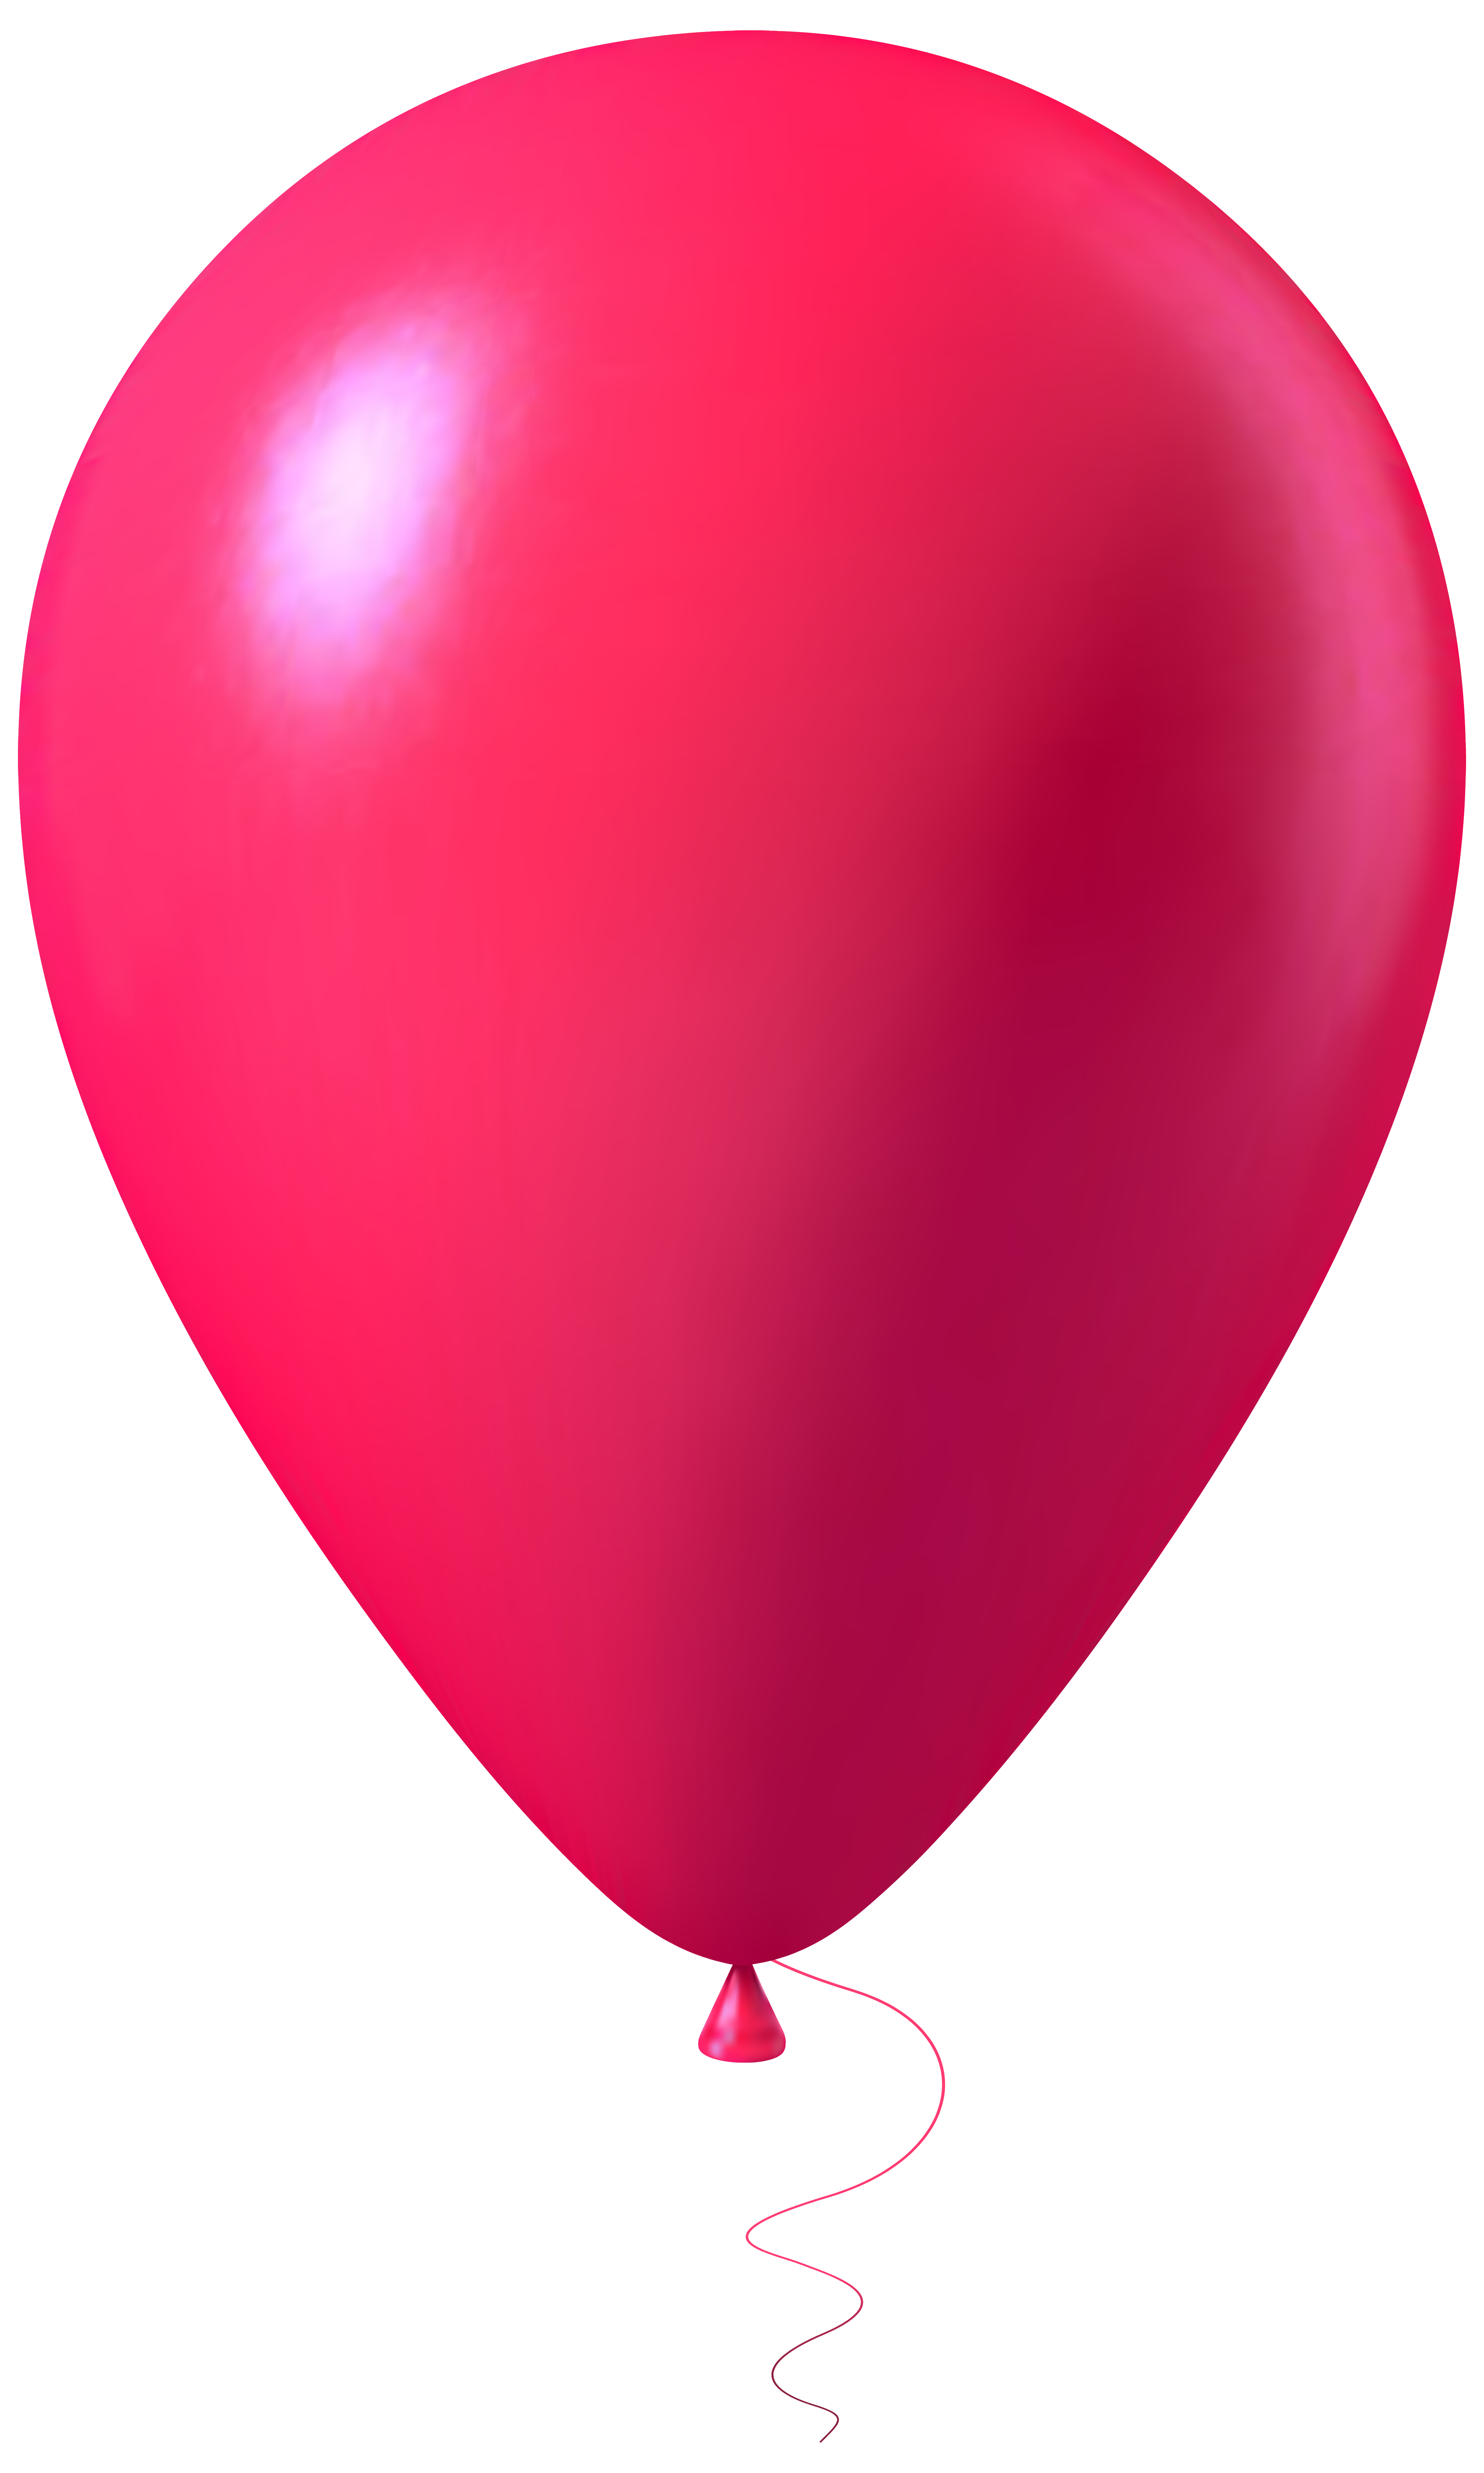 Pink balloon photo